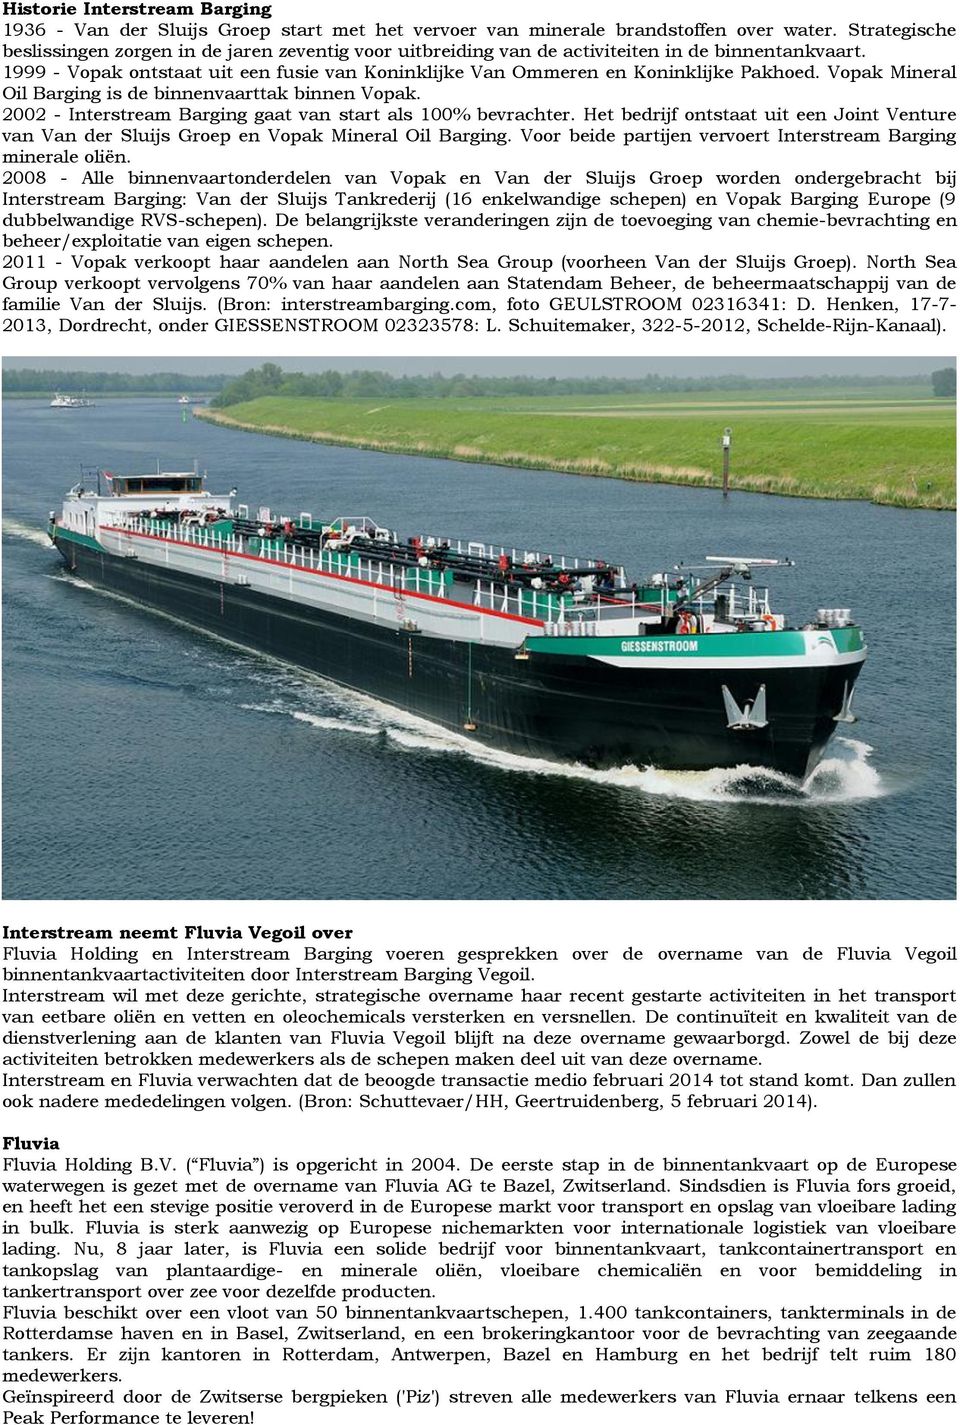 1999 - Vopak ontstaat uit een fusie van Koninklijke Van Ommeren en Koninklijke Pakhoed. Vopak Mineral Oil Barging is de binnenvaarttak binnen Vopak.